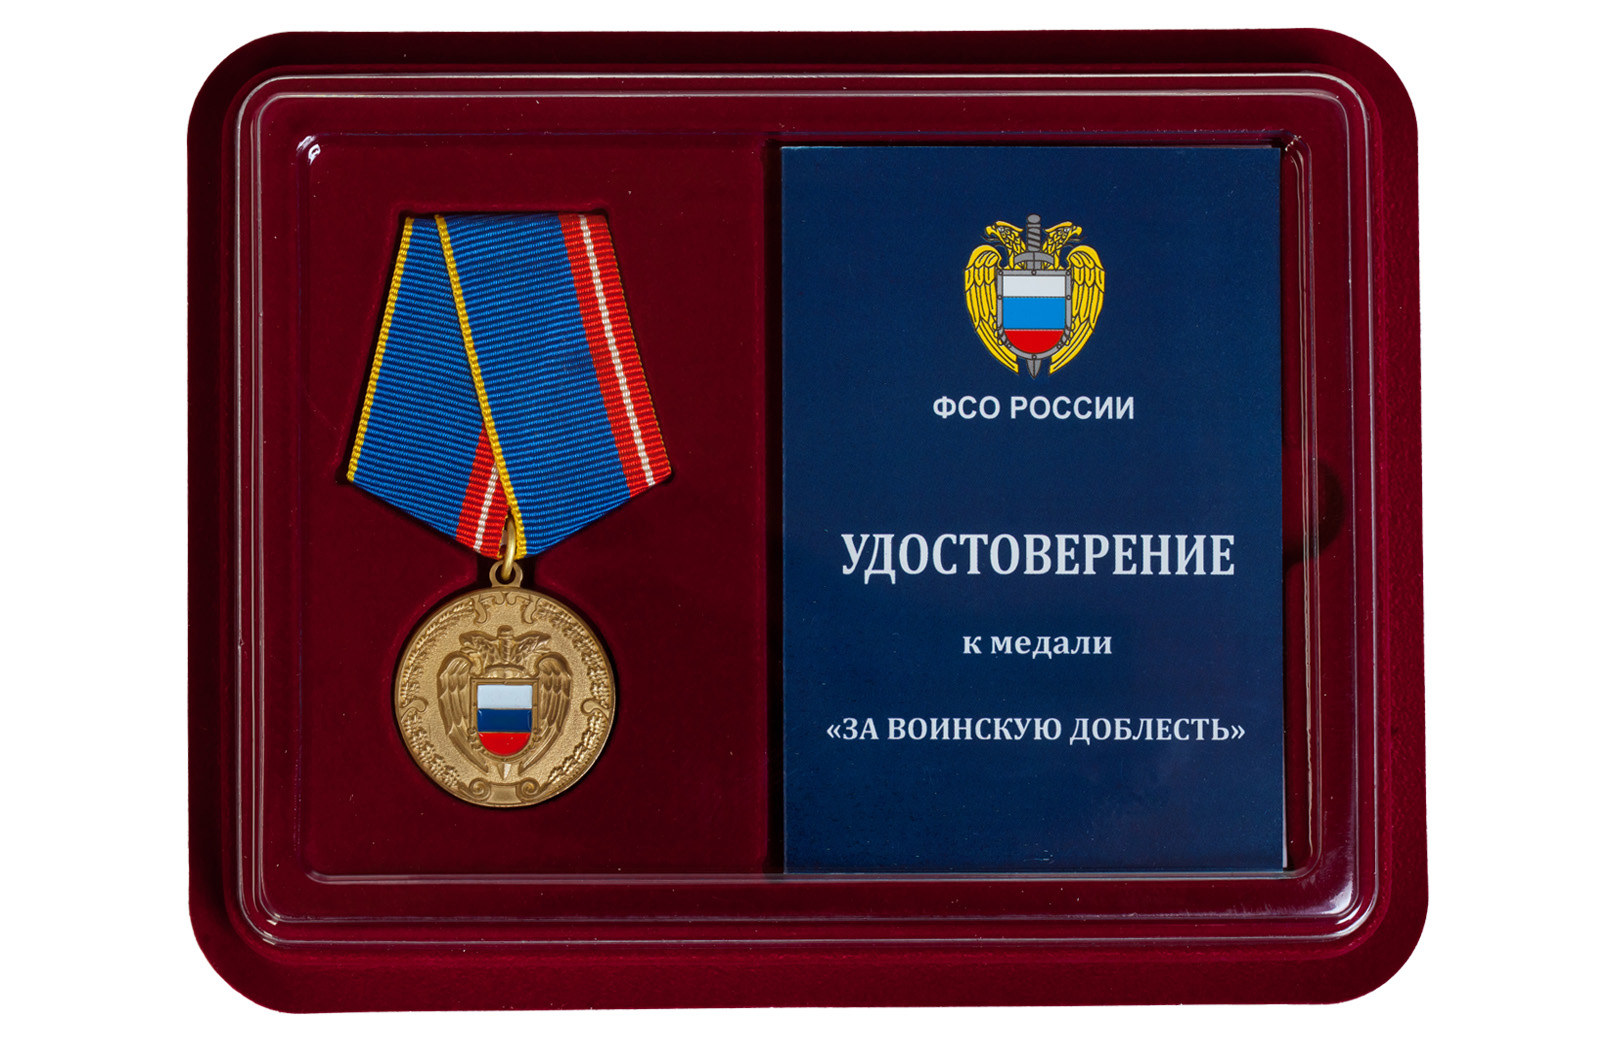 Купить медаль ФСО РФ За воинскую доблесть в подарок мужчине